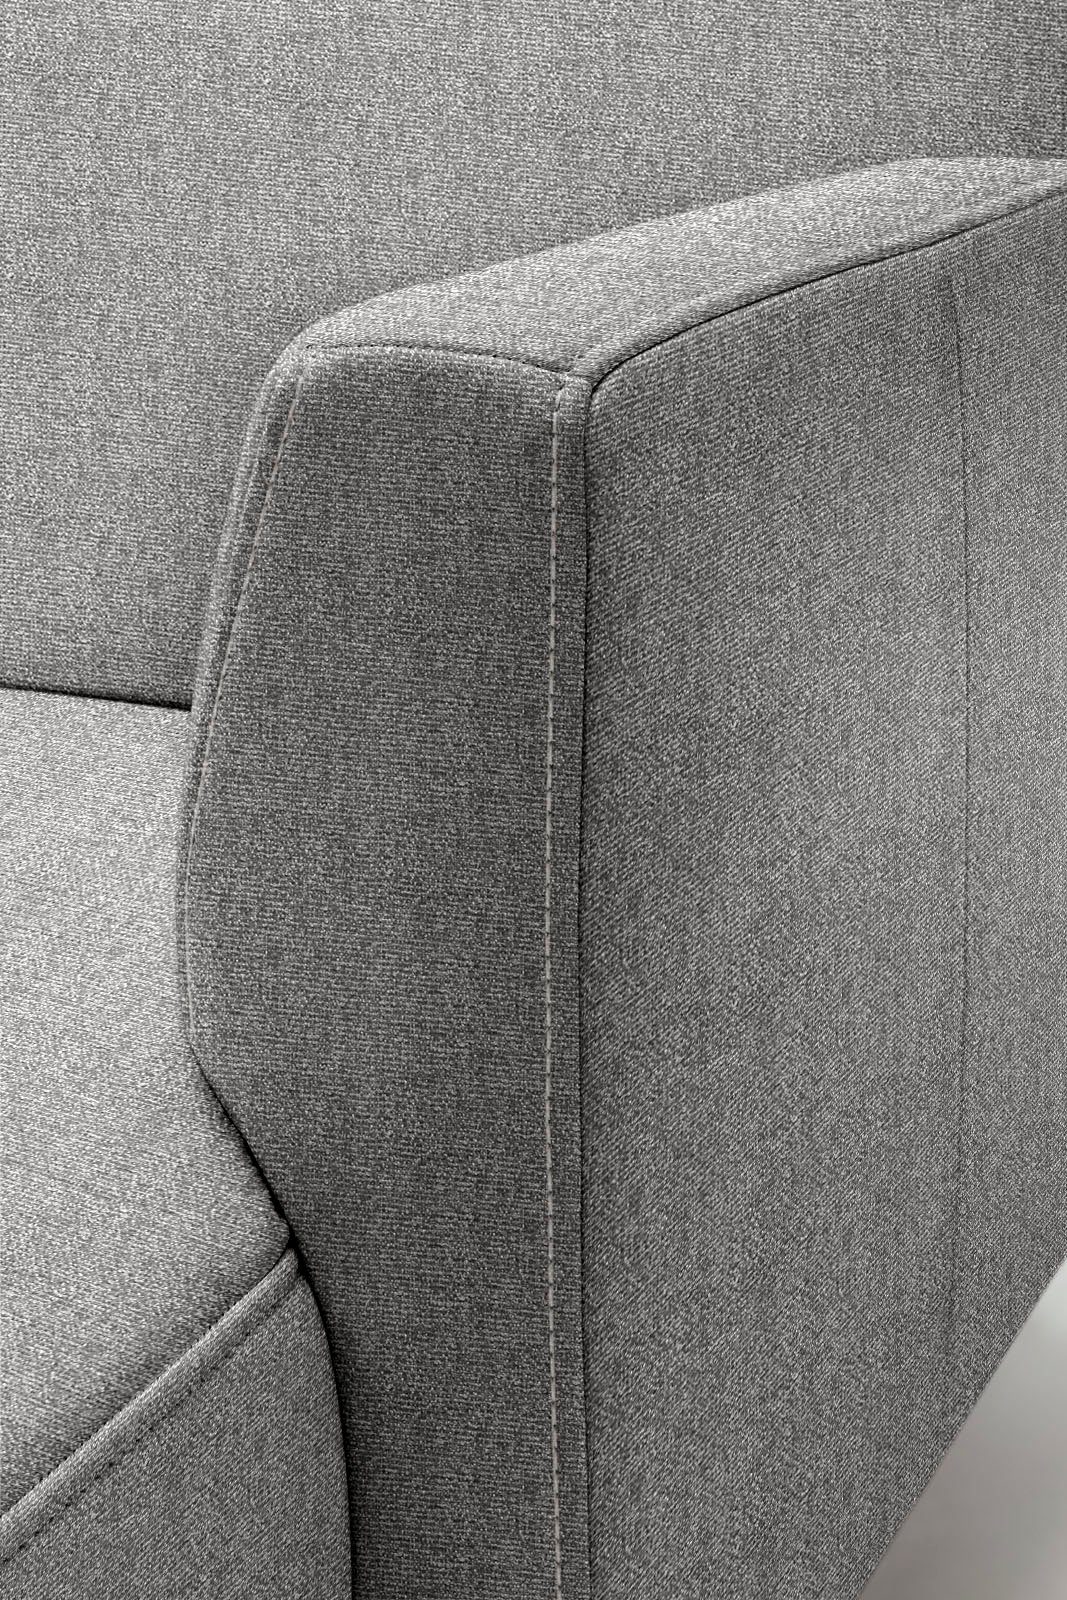 sofa 275 minimalistischer, in Ecksofa schwereloser hs.446, cm Optik, hülsta Breite